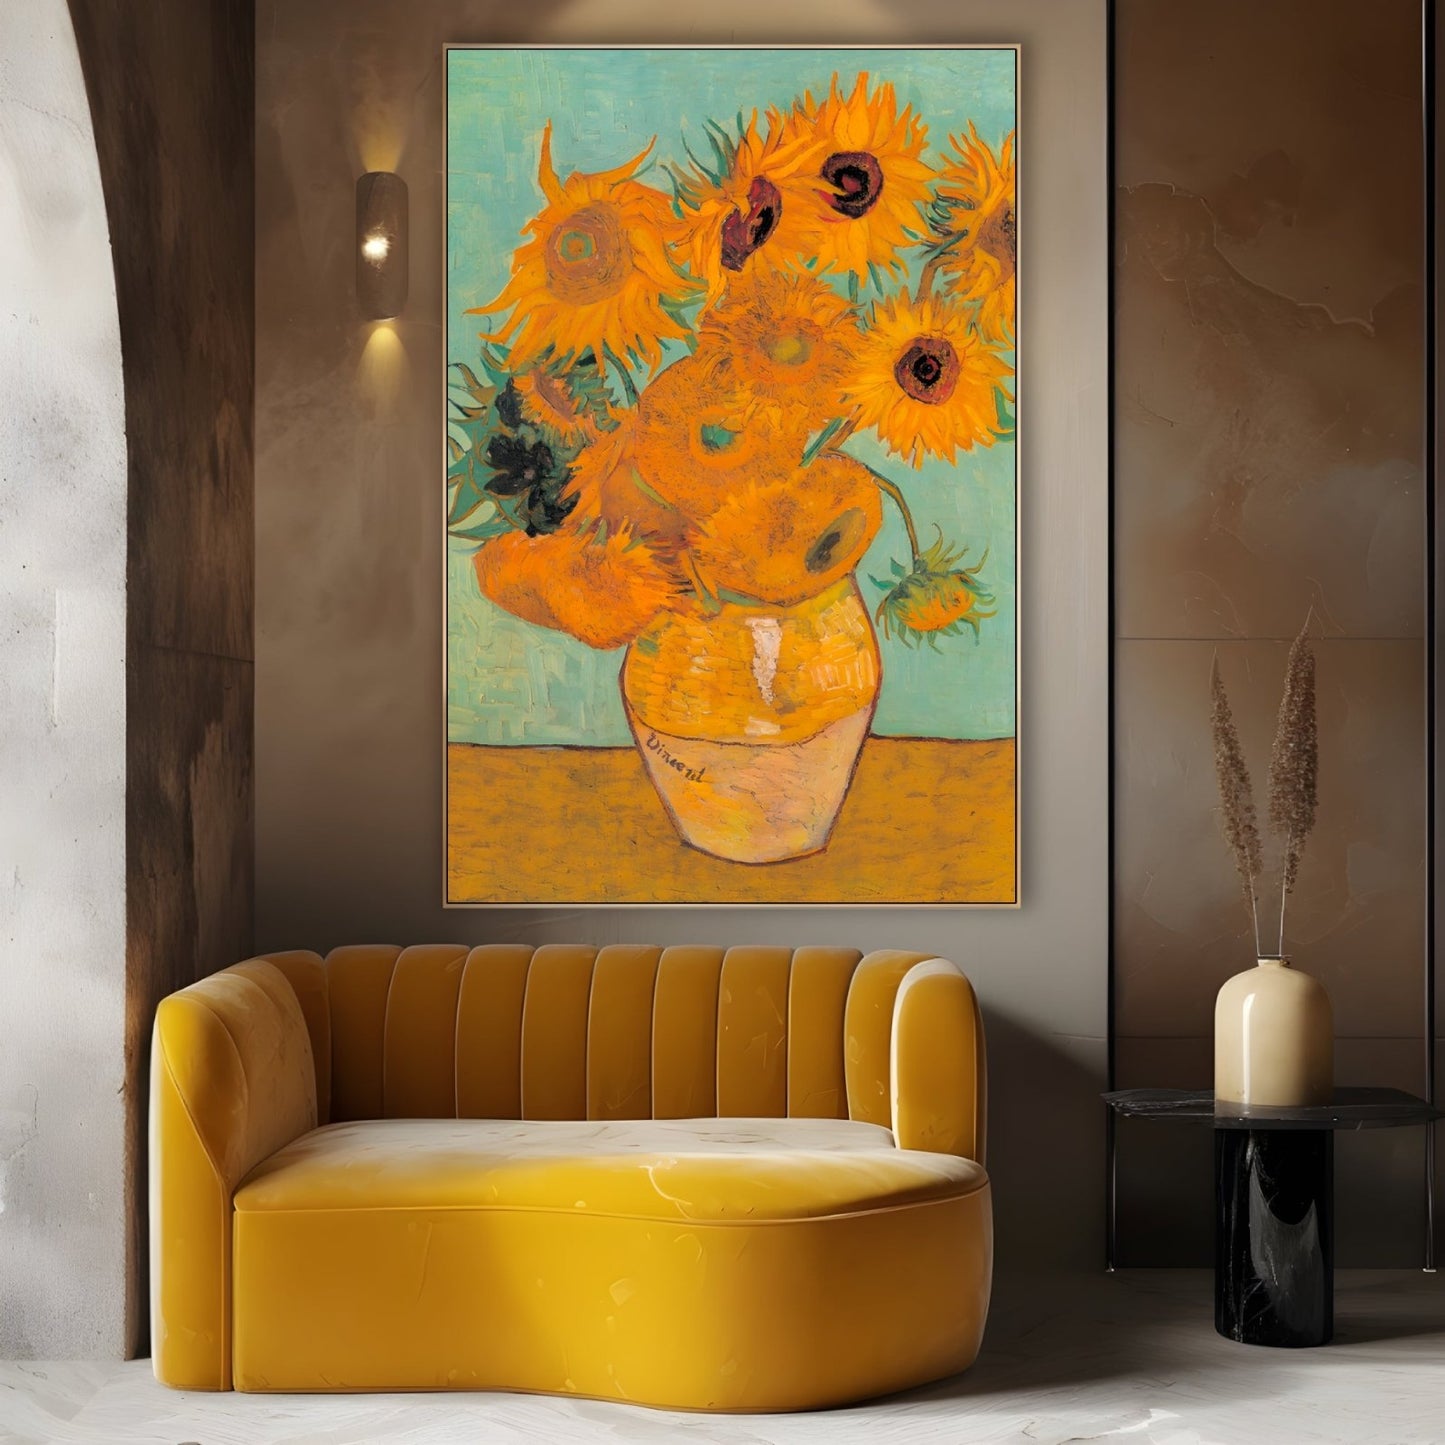 Auringonkukat II, Vincent Van Gogh